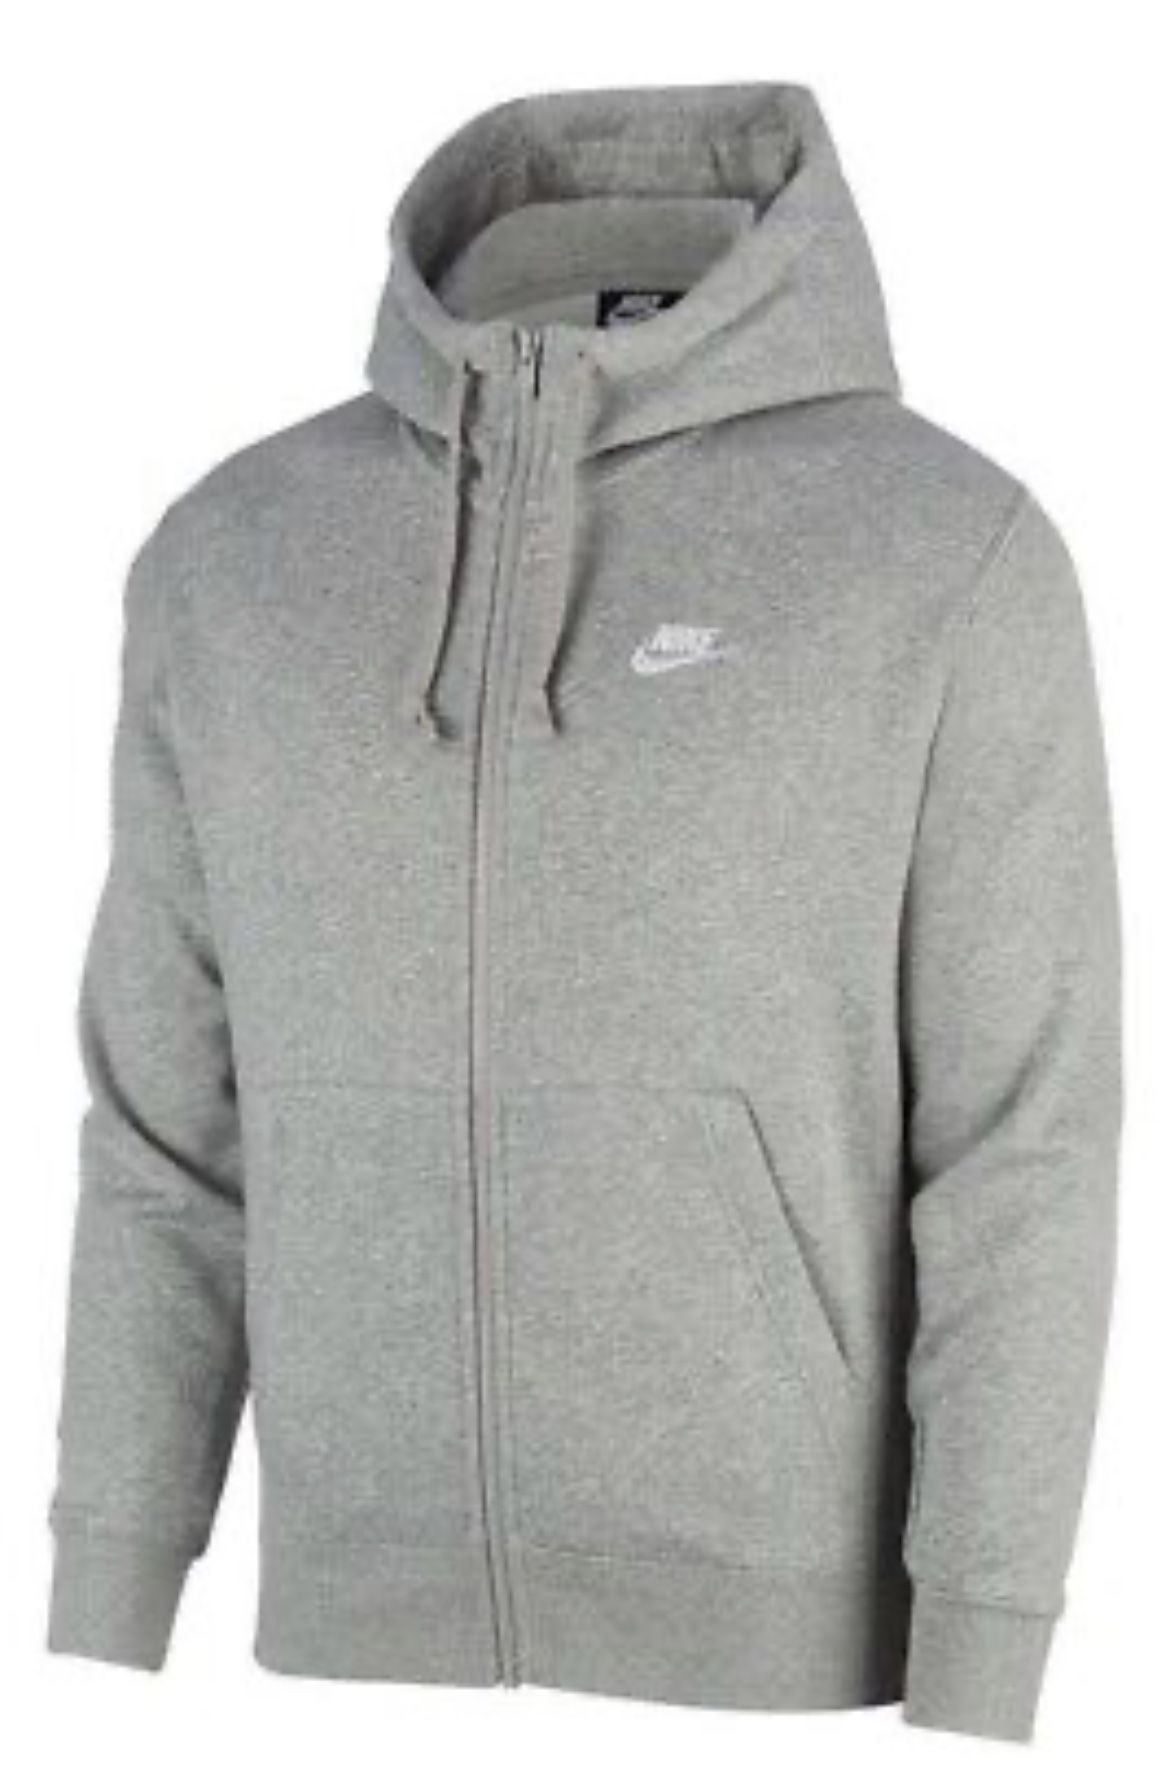 Nike Grey Jacket 